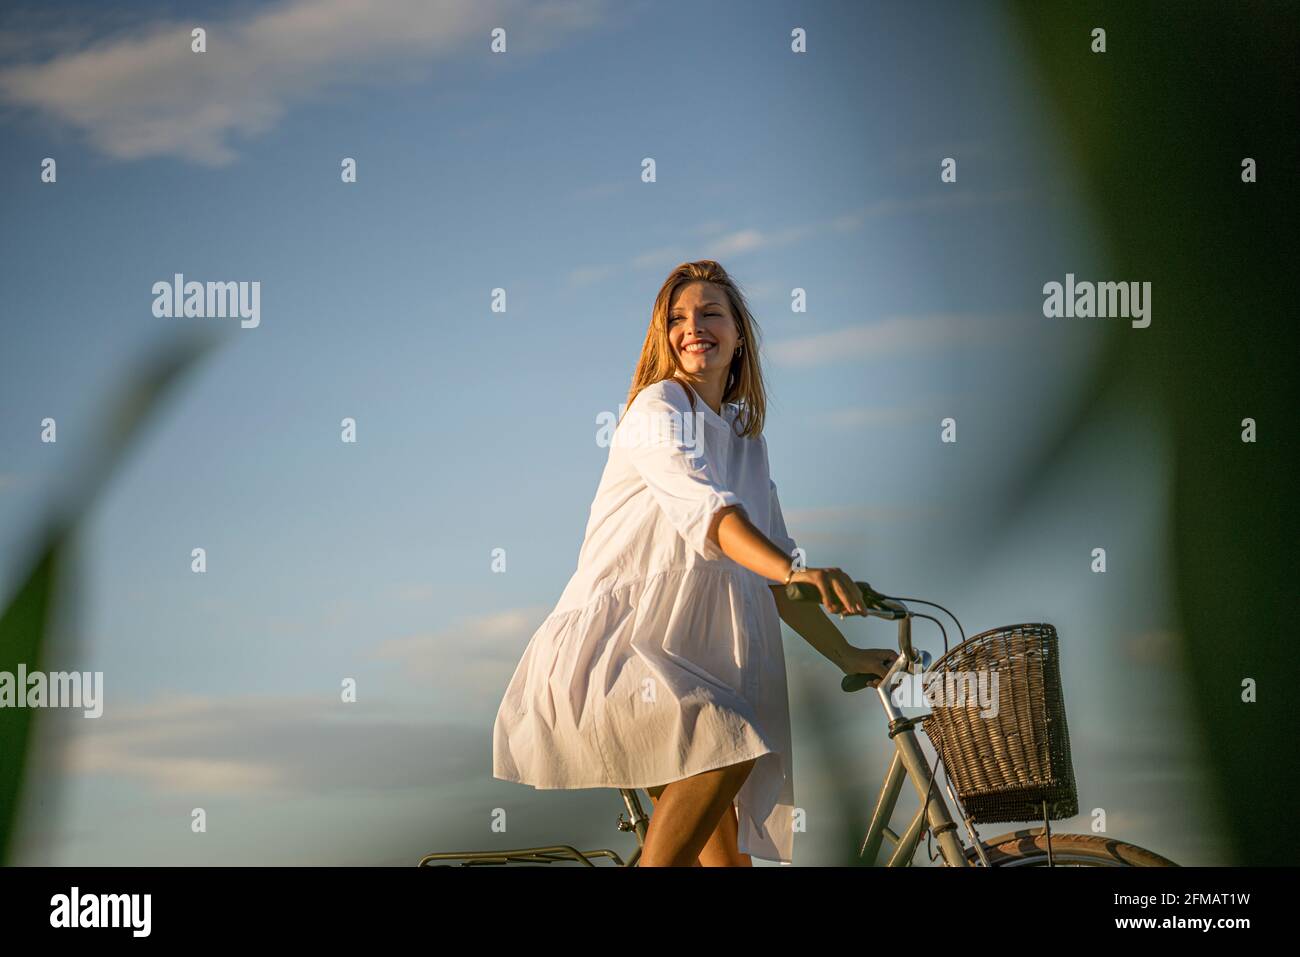 La giovane donna guida una bicicletta con un cesto nell'umore serale, Franconia, Baviera, Germania Foto Stock